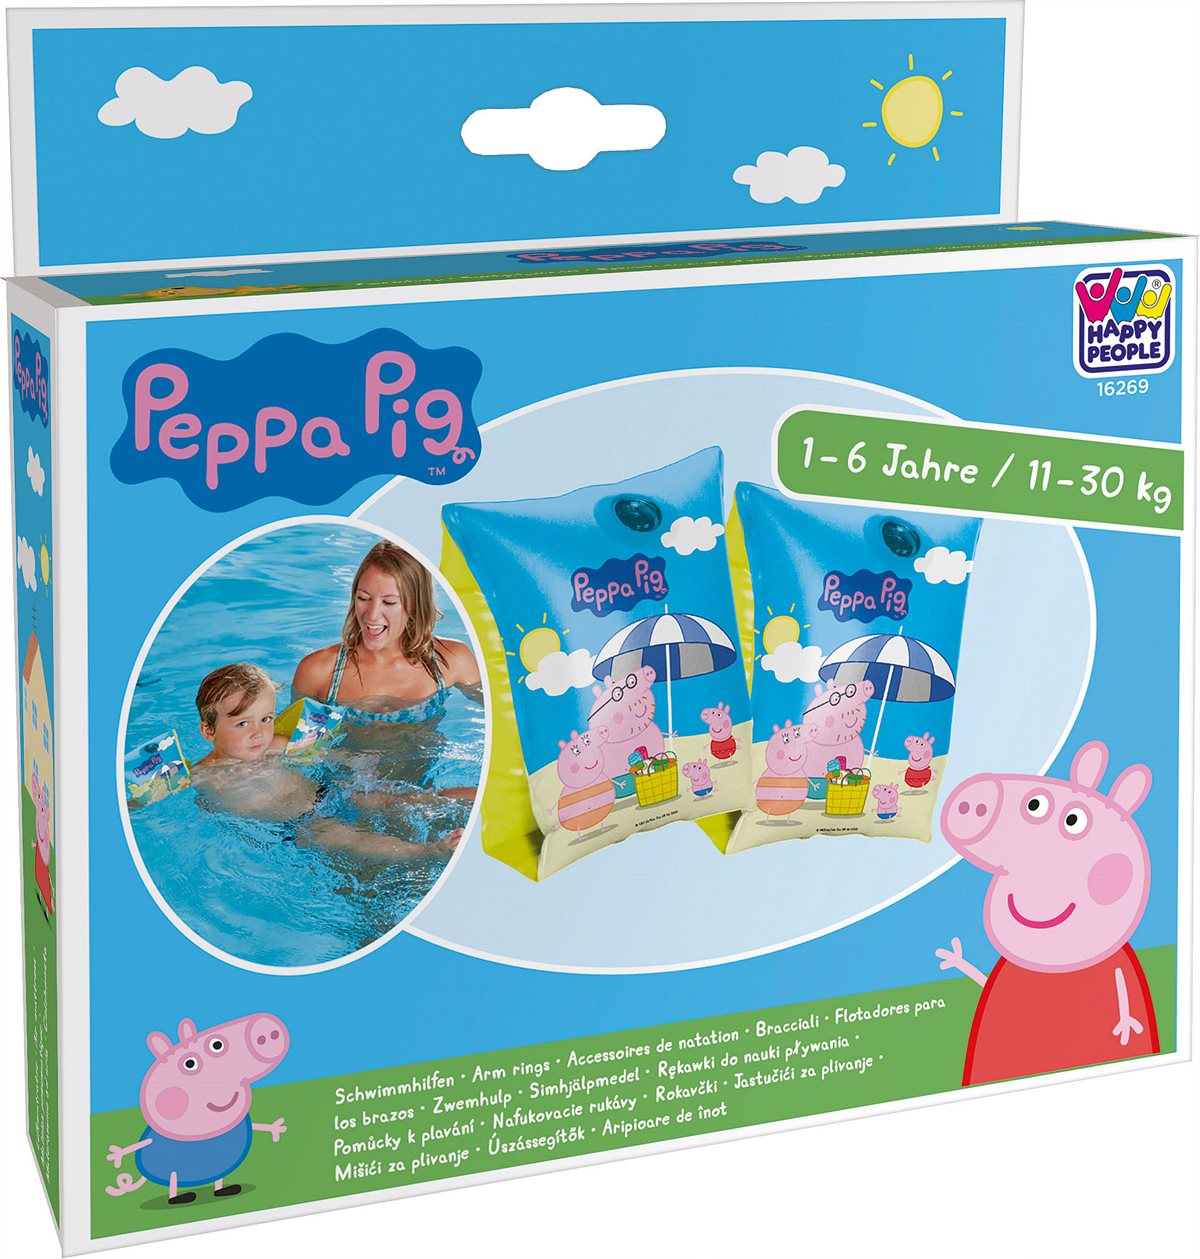 LIBRO_Schwimmhilfen, 1 - 6 Jahre, 11 - 30 kg_Peppa Pig_€ 5,99